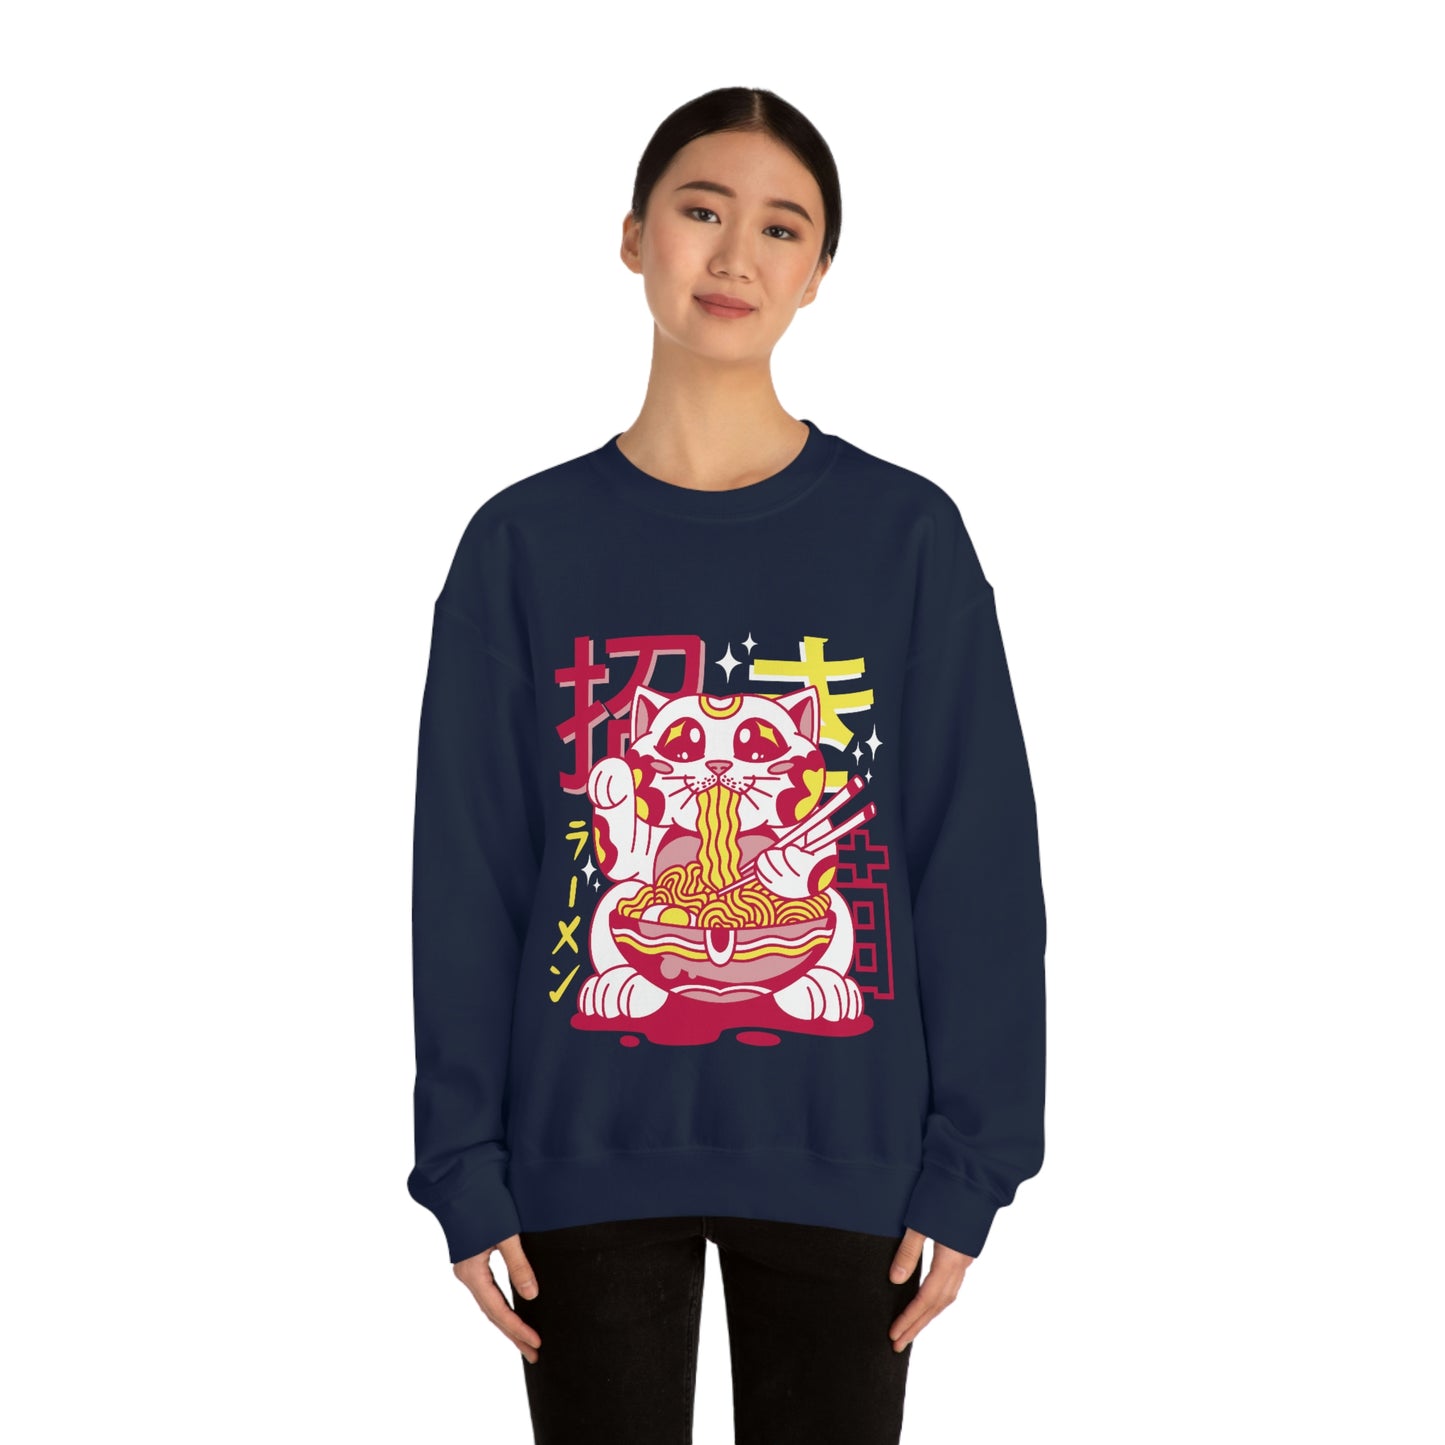 Kawaii Sweatshirt, Kawaii Clothing, Kawaii Clothes, Yami Kawaii Aesthetic, Pastel Kawaii Sweatshirt Ramen Sweater Sweatshirt